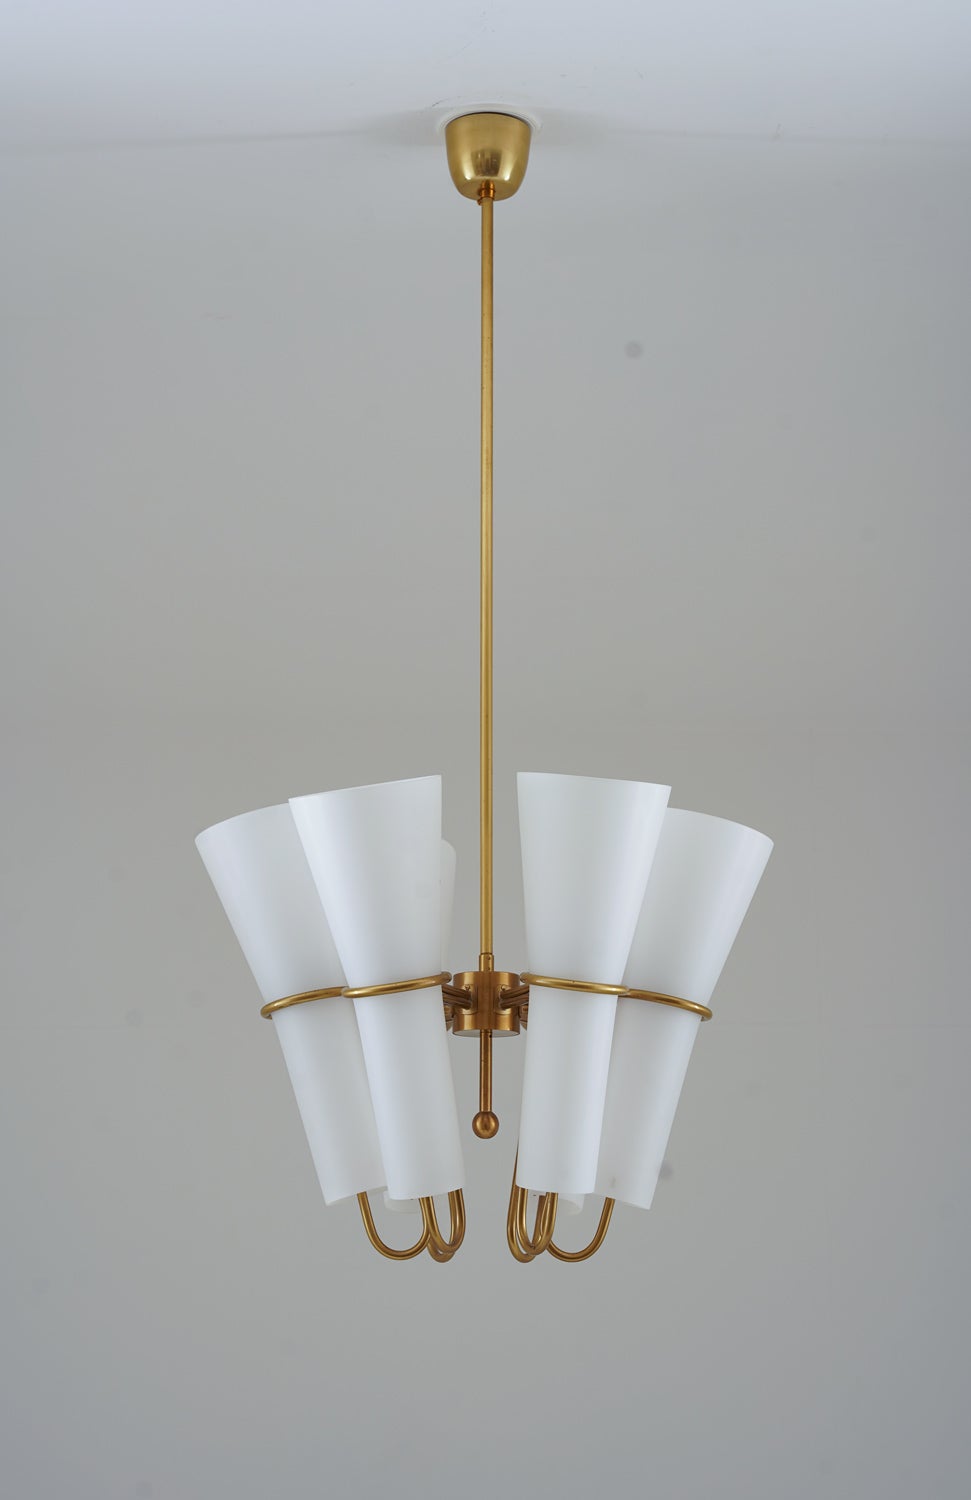 Très rares lustres de Hans-Agne Jakobsson, fabriqués par Arnold Wiig Fabrikker, Norvège.
Ces lampes magiques comportent six sources lumineuses, cachées par de grands abat-jours en verre opalin. Les abat-jours sont maintenus par un cadre en